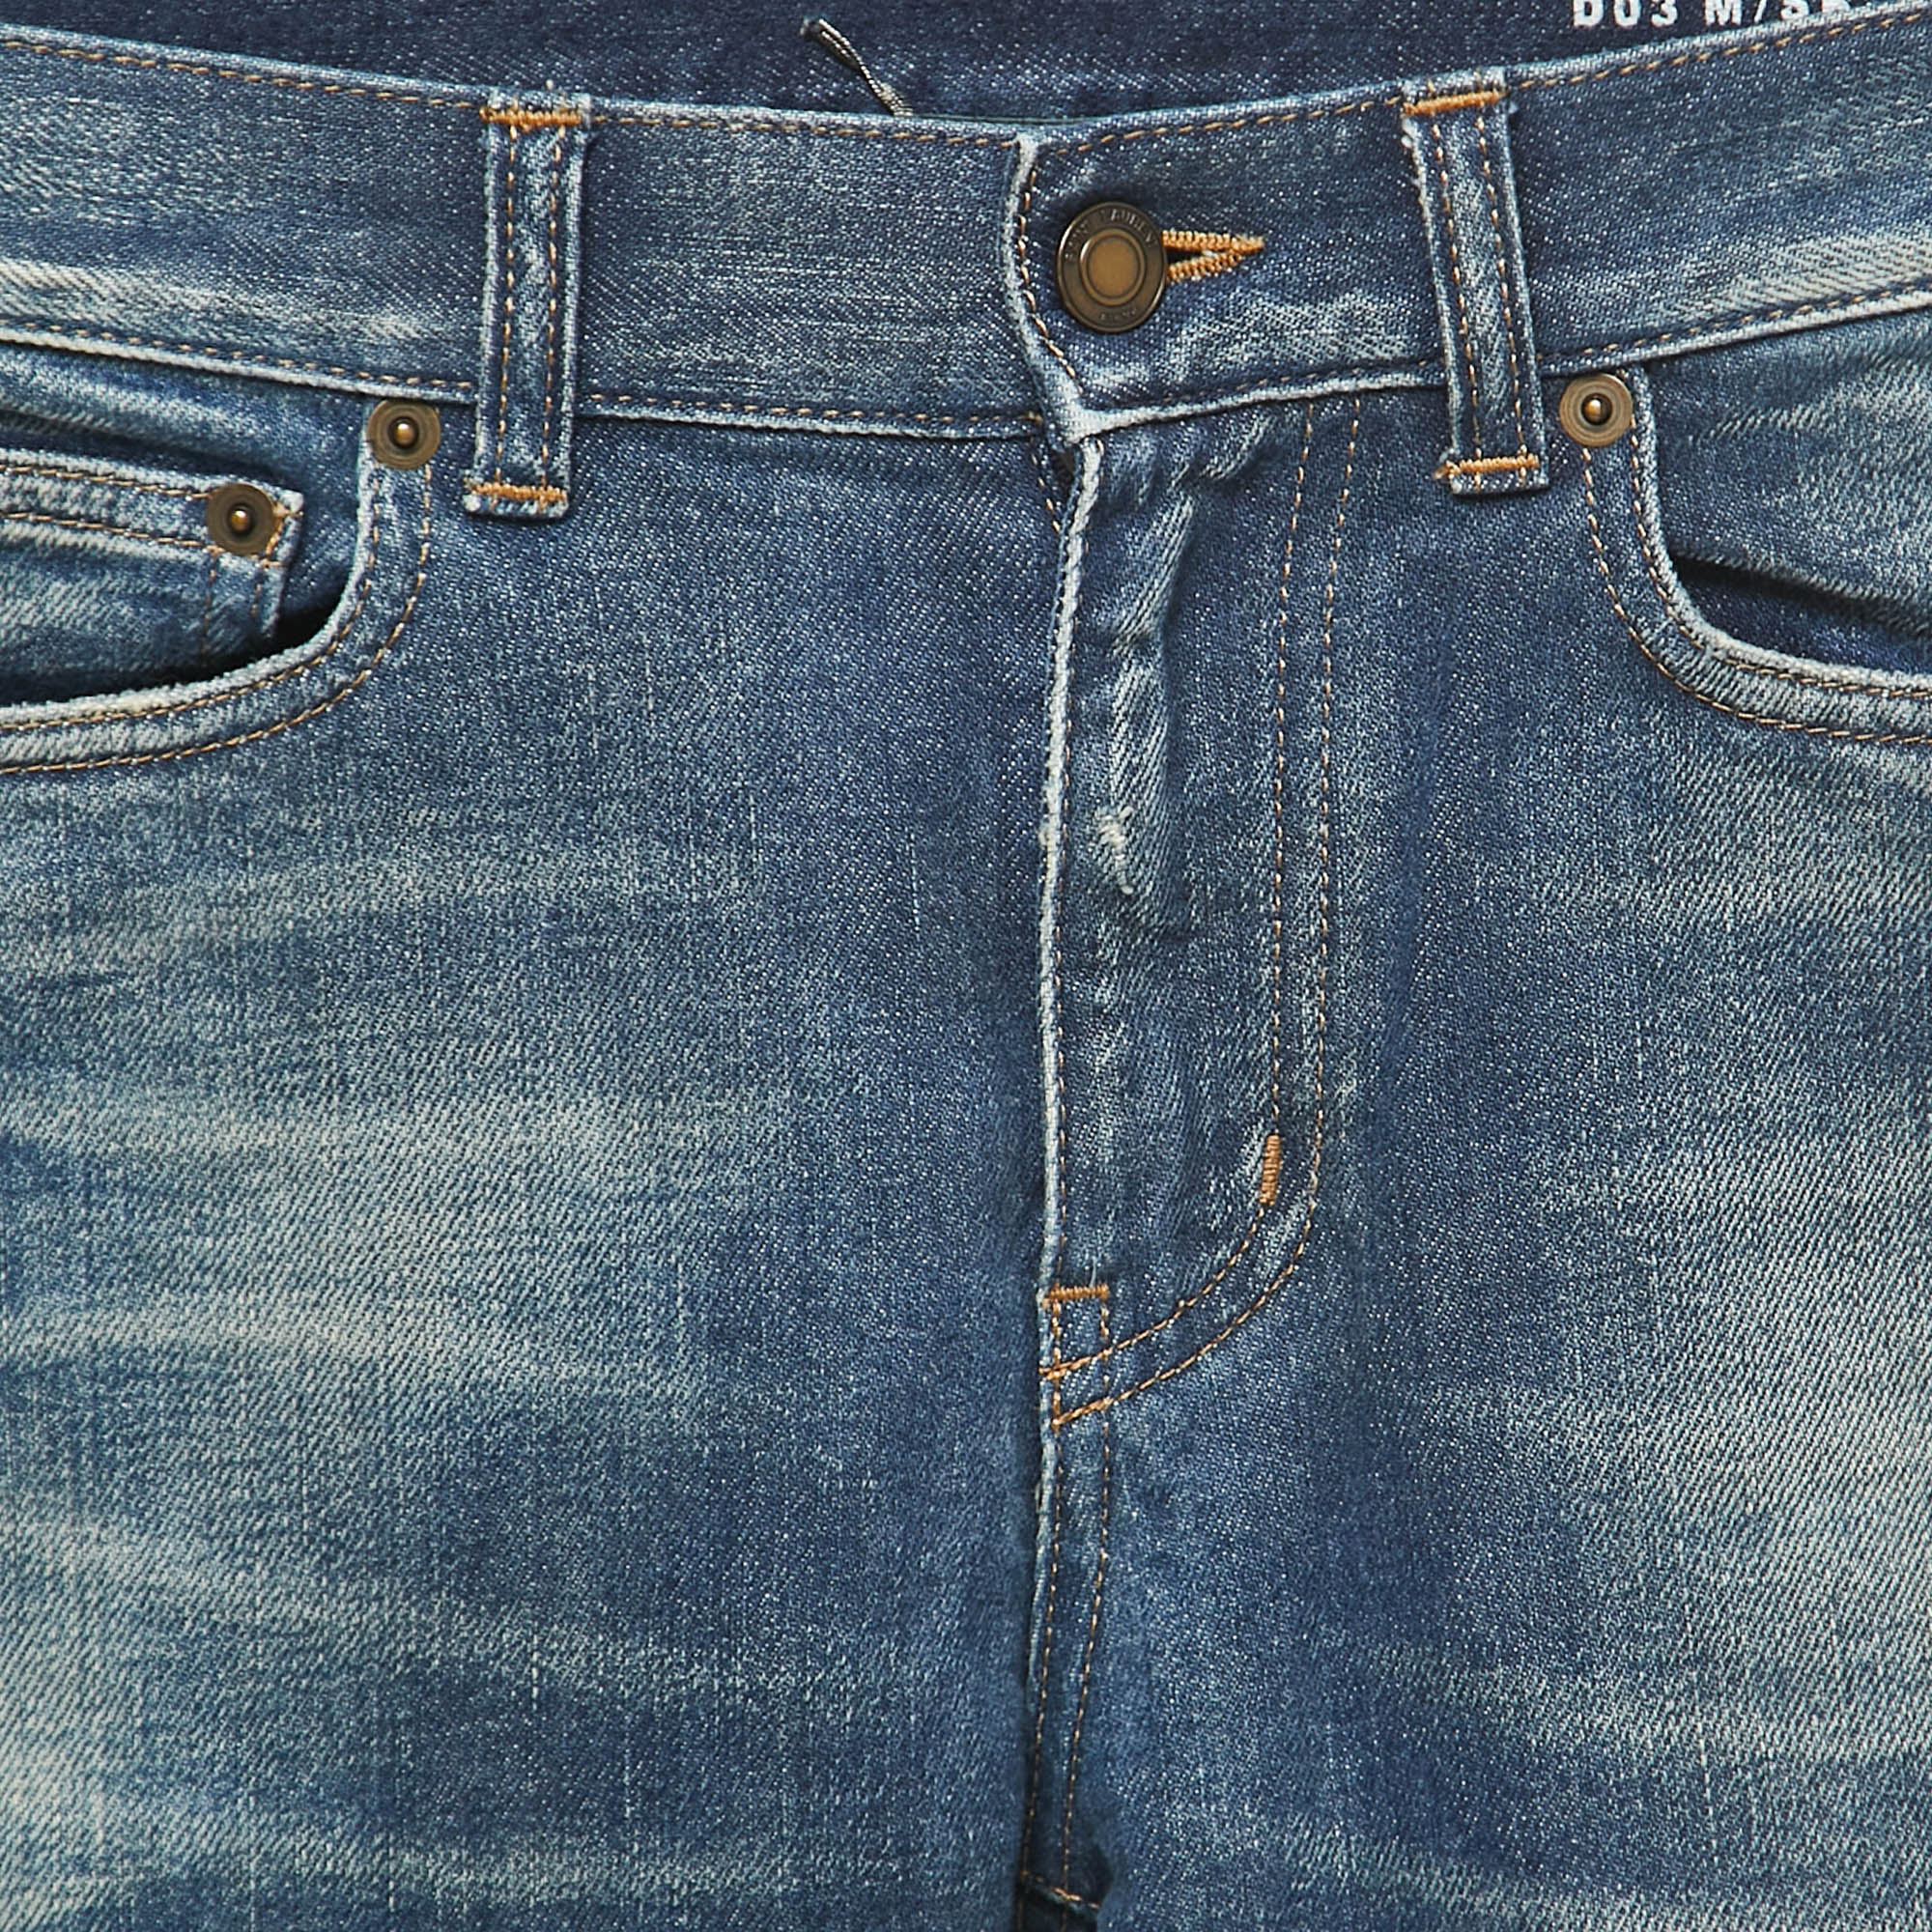 Saint Laurent Paris Blue Washed Denim Slim Fit Jeans S Waist 29